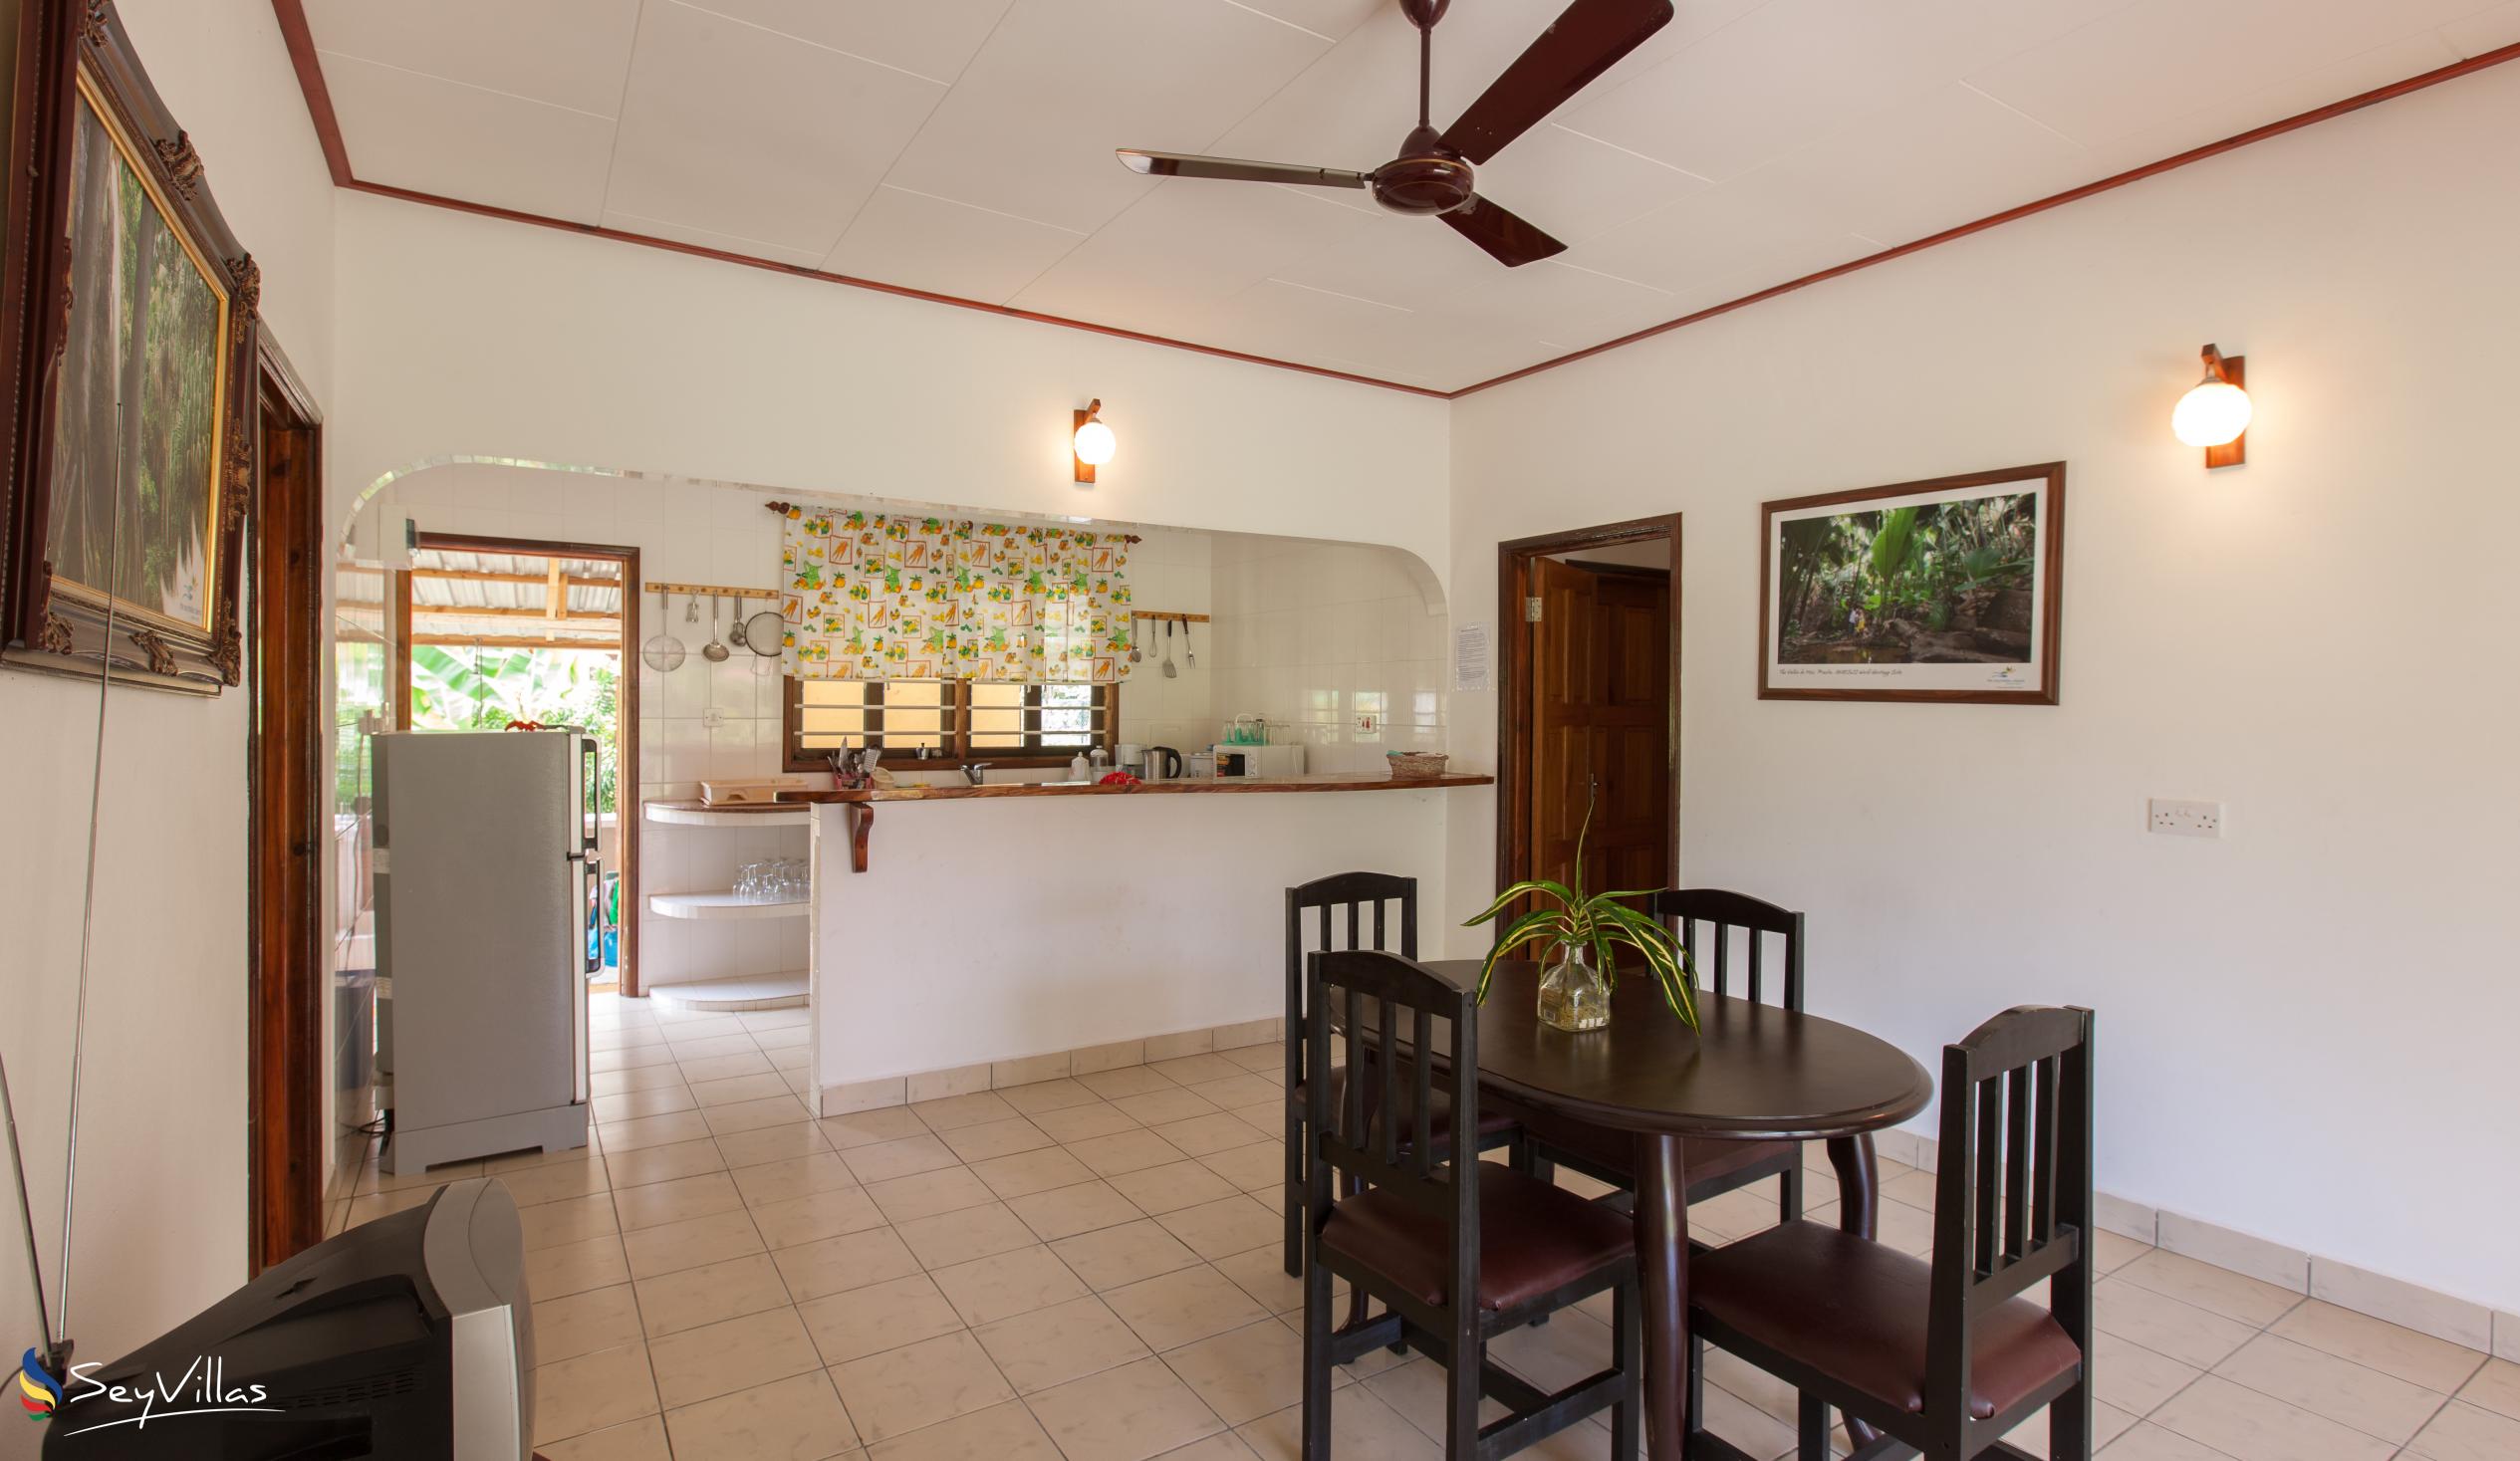 Foto 37: Zerof Self Catering  Apartments - Bungalow à 2 chambres - La Digue (Seychelles)